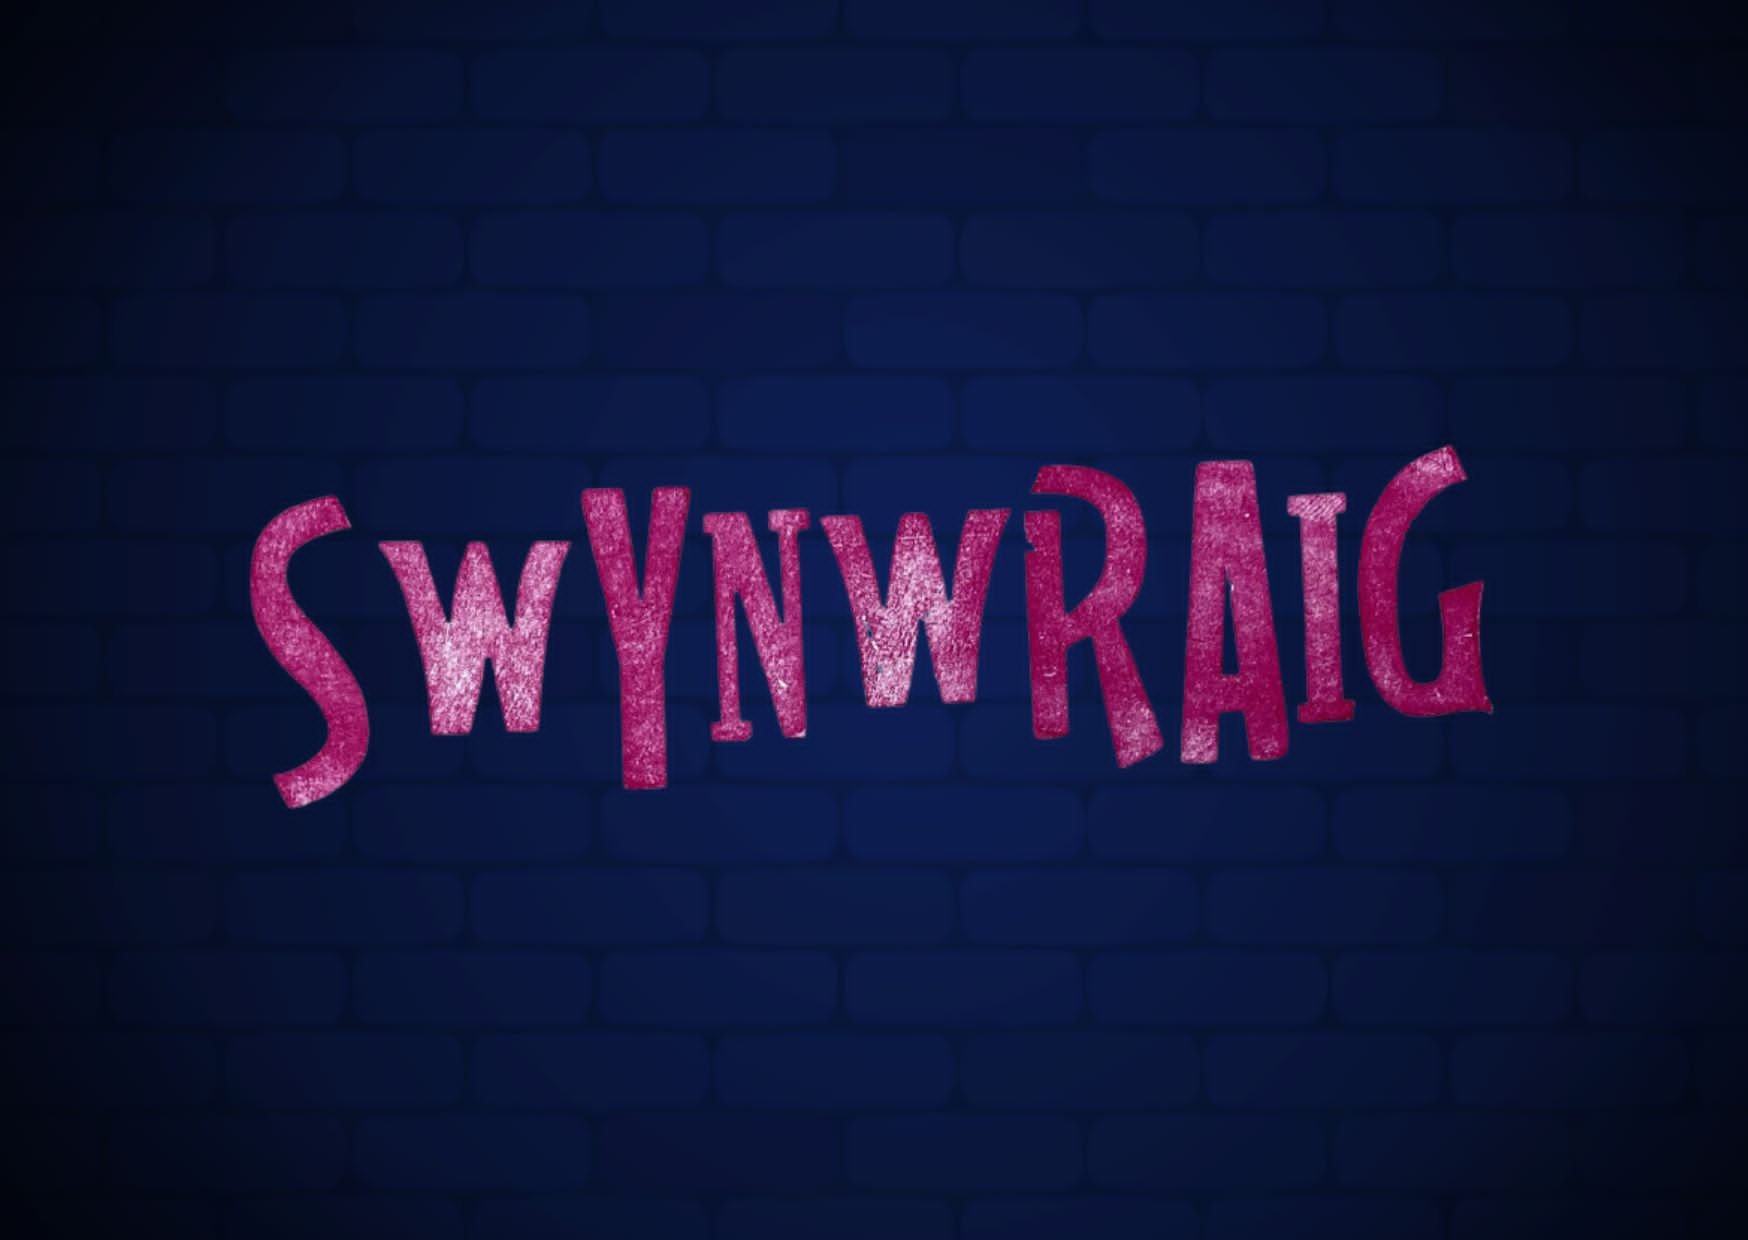 Logo Swynwraig ar gyfer lansiad eu Label Recordio newydd gan artist Francesca Kay.